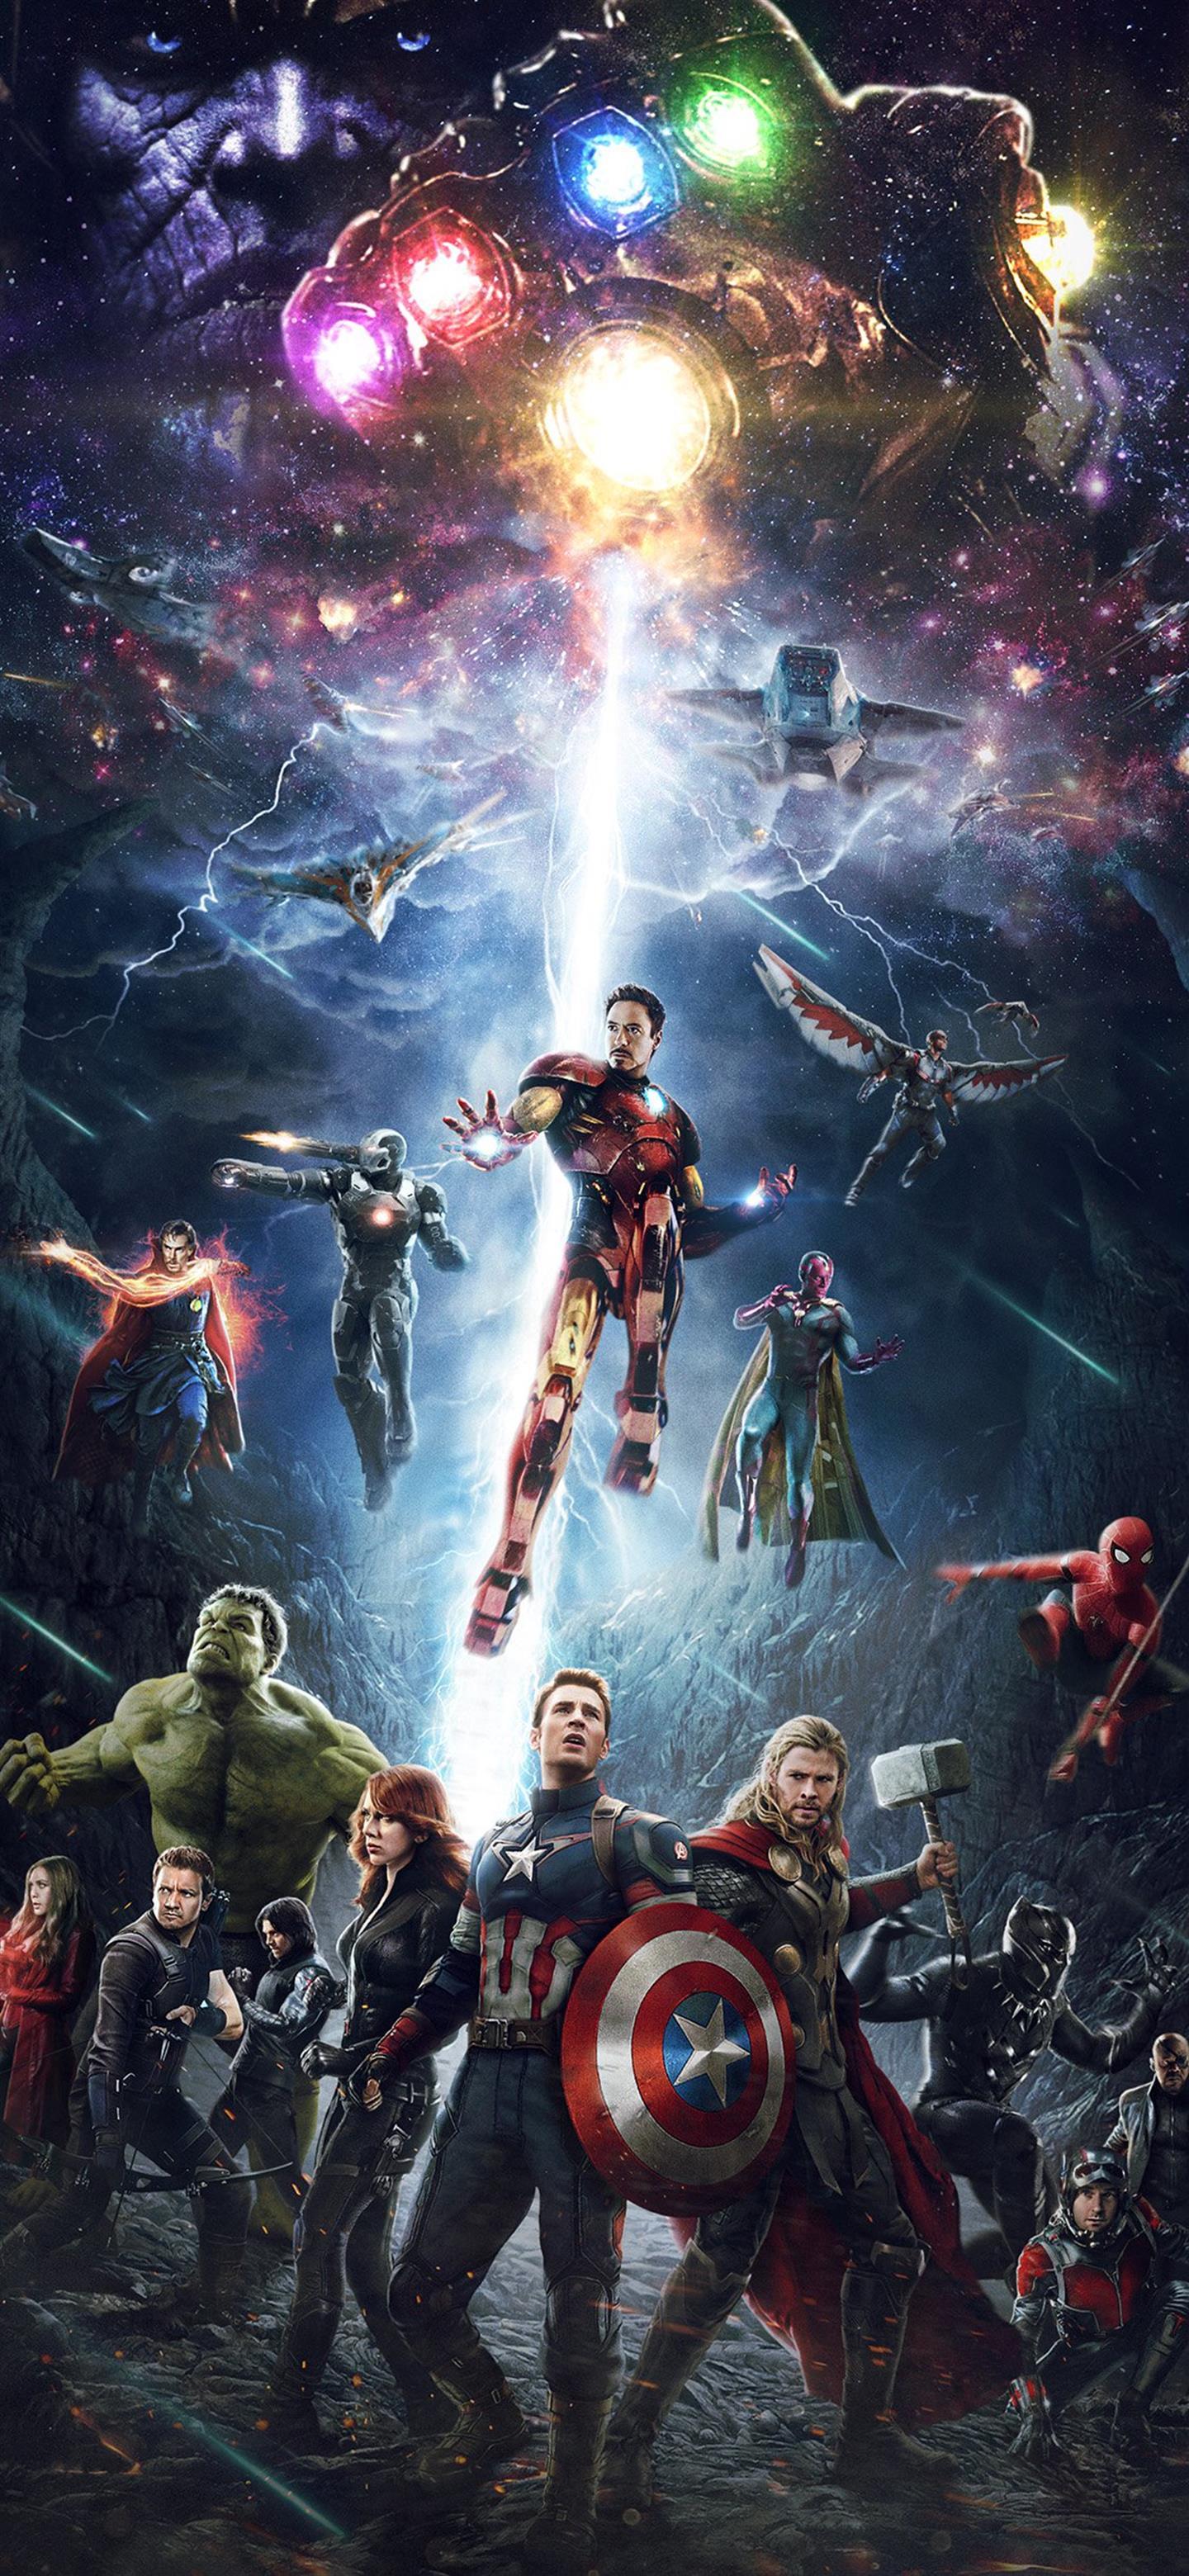 1440x3120 Marvel Infinity War Avengers Anh hùng Art - Hình nền điện thoại Android